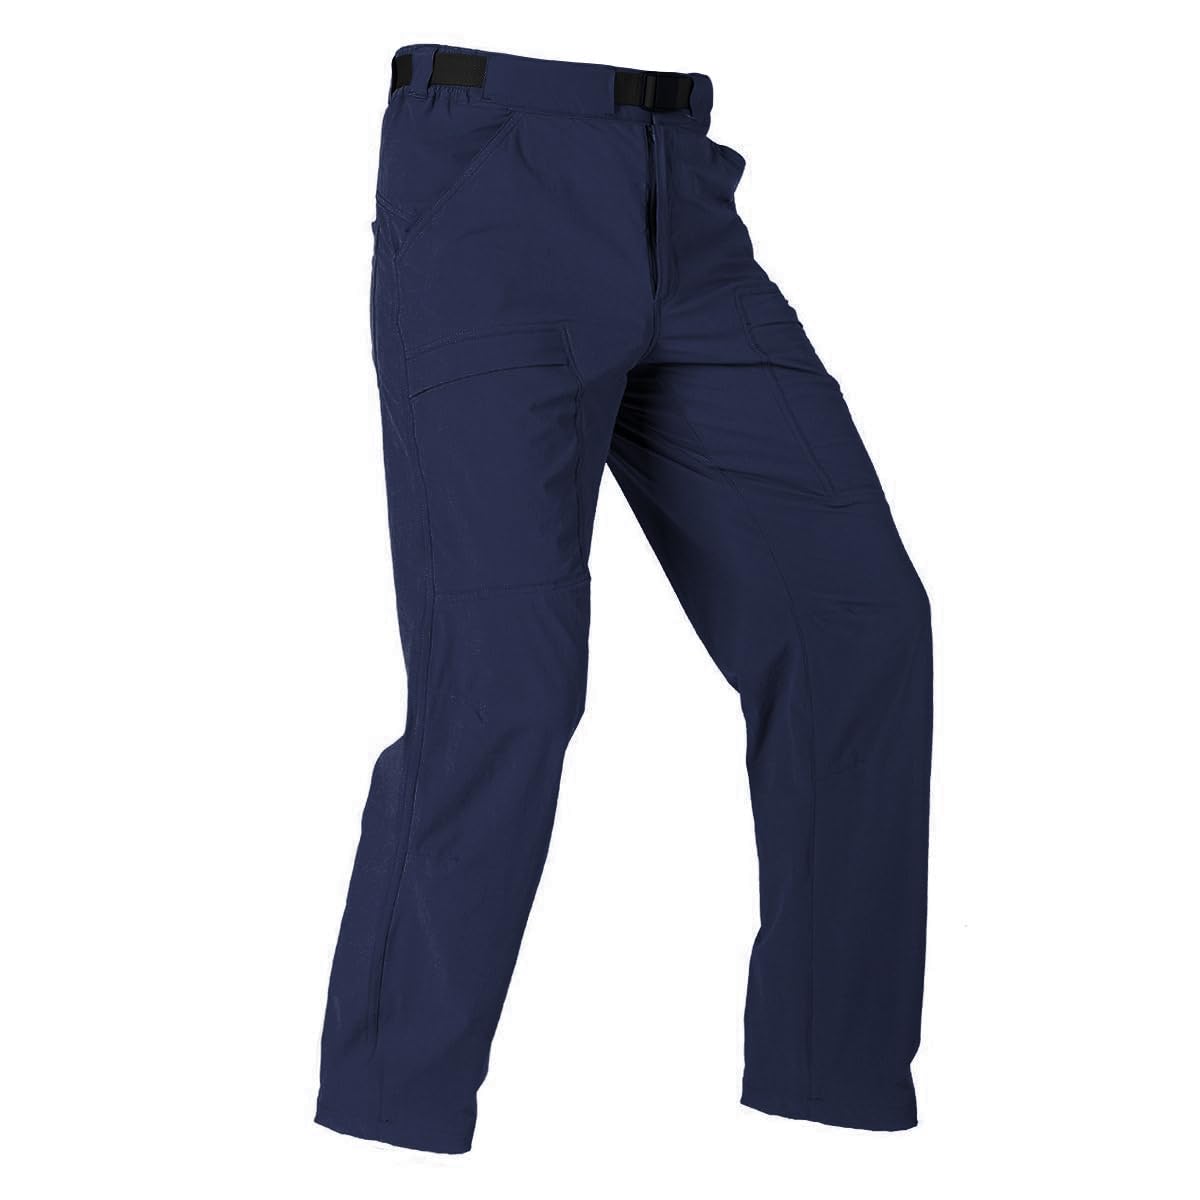  NAVEKULL Men's Lightweight Tactical Pants Quick Dry